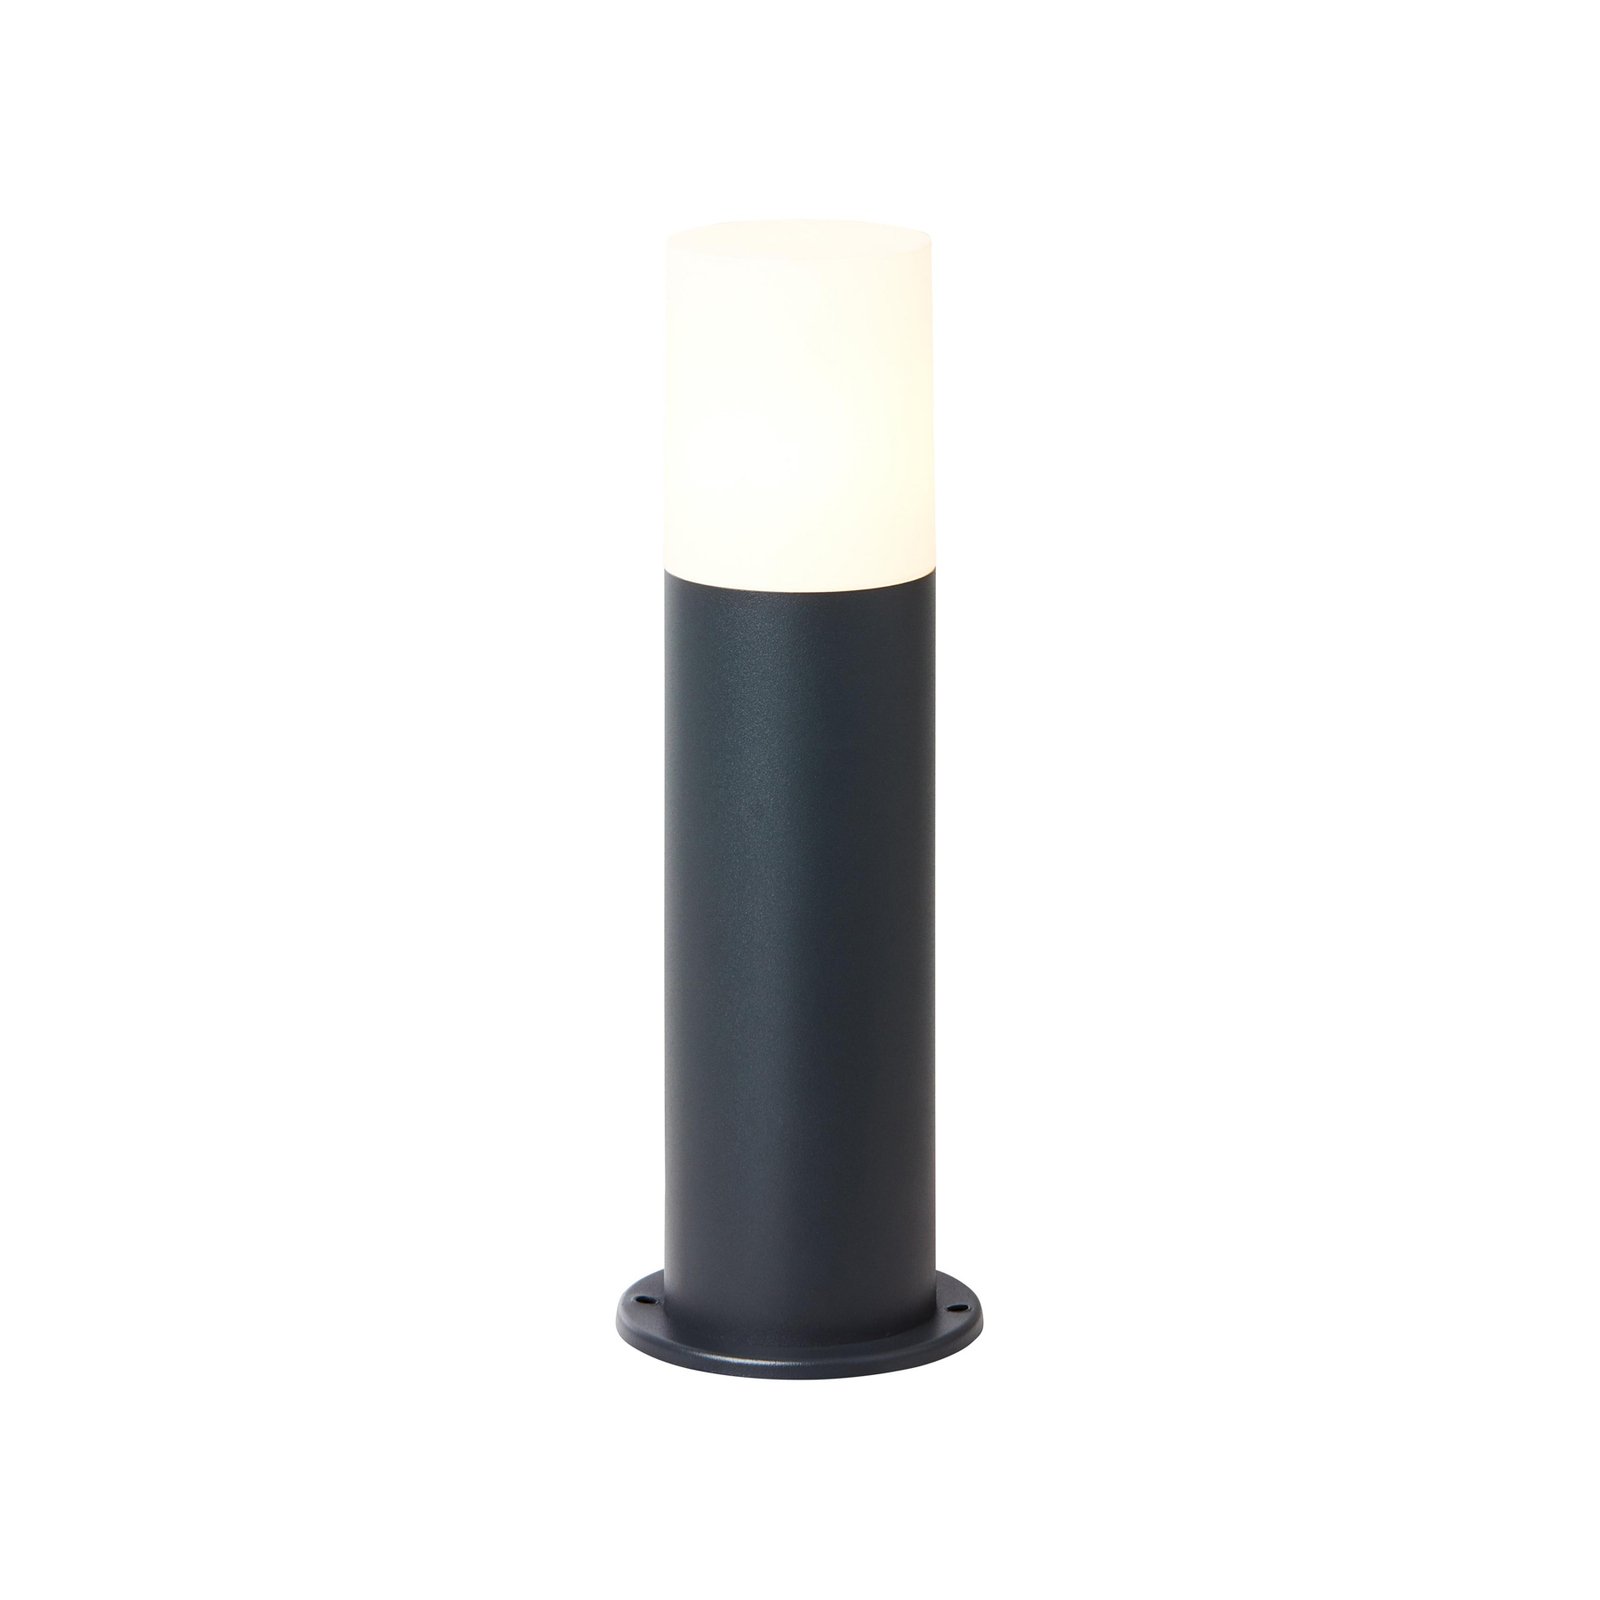 Aberdeen pillar light, height 35 cm, anthracite, stainless steel